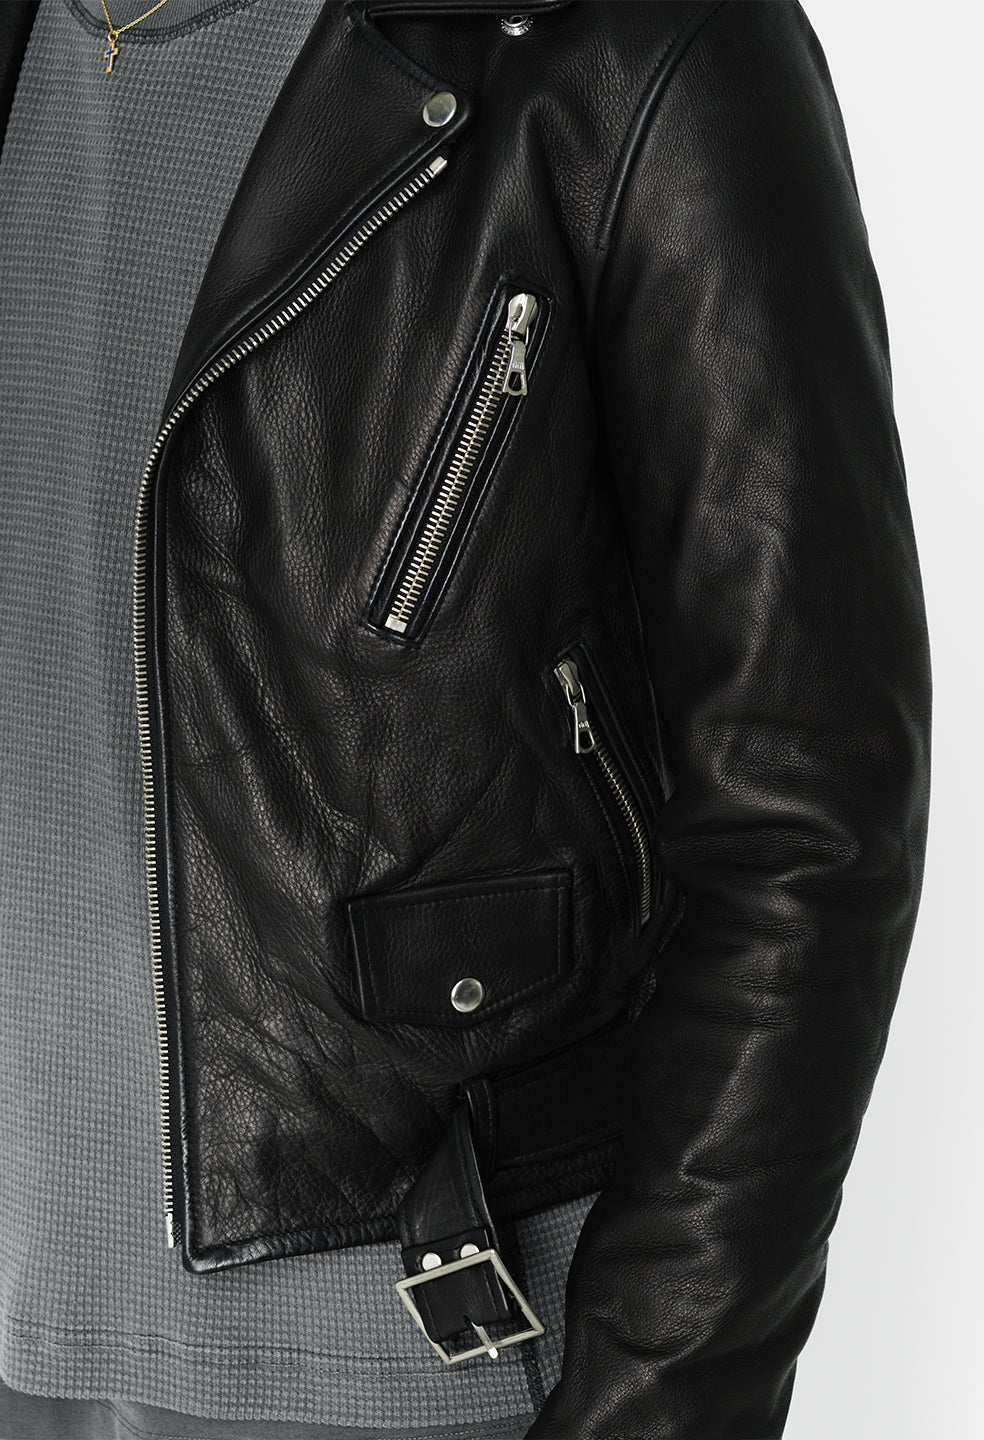 Leather Motorcycle Jacket (Black)